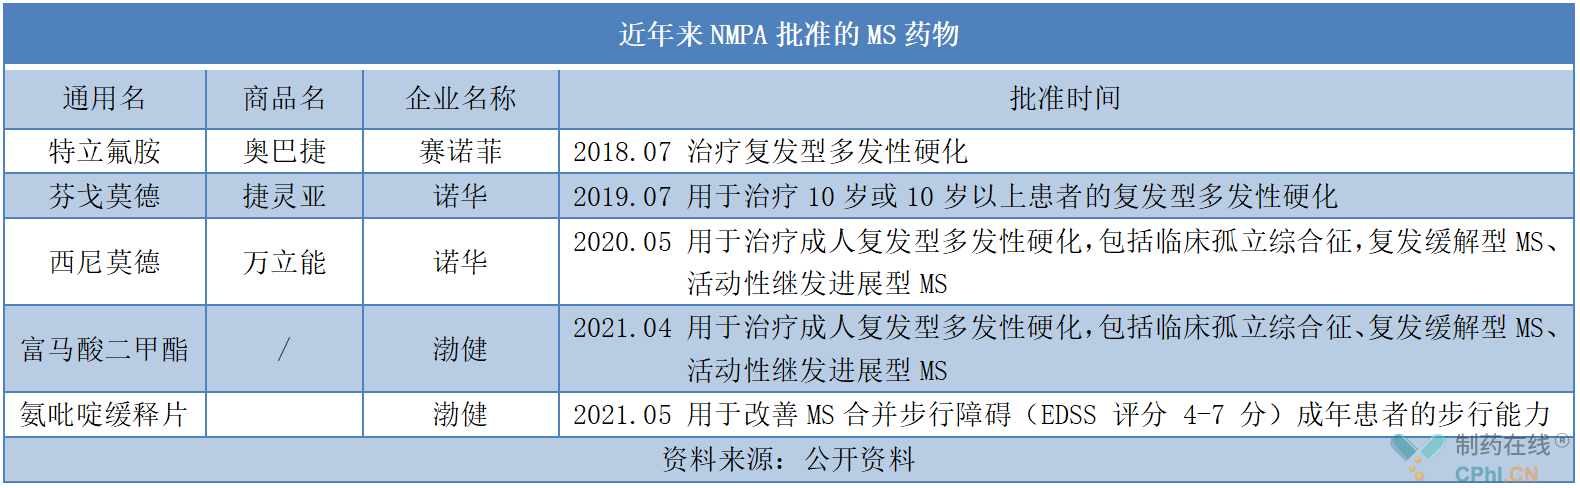 近年来NMPA批准的MS药物